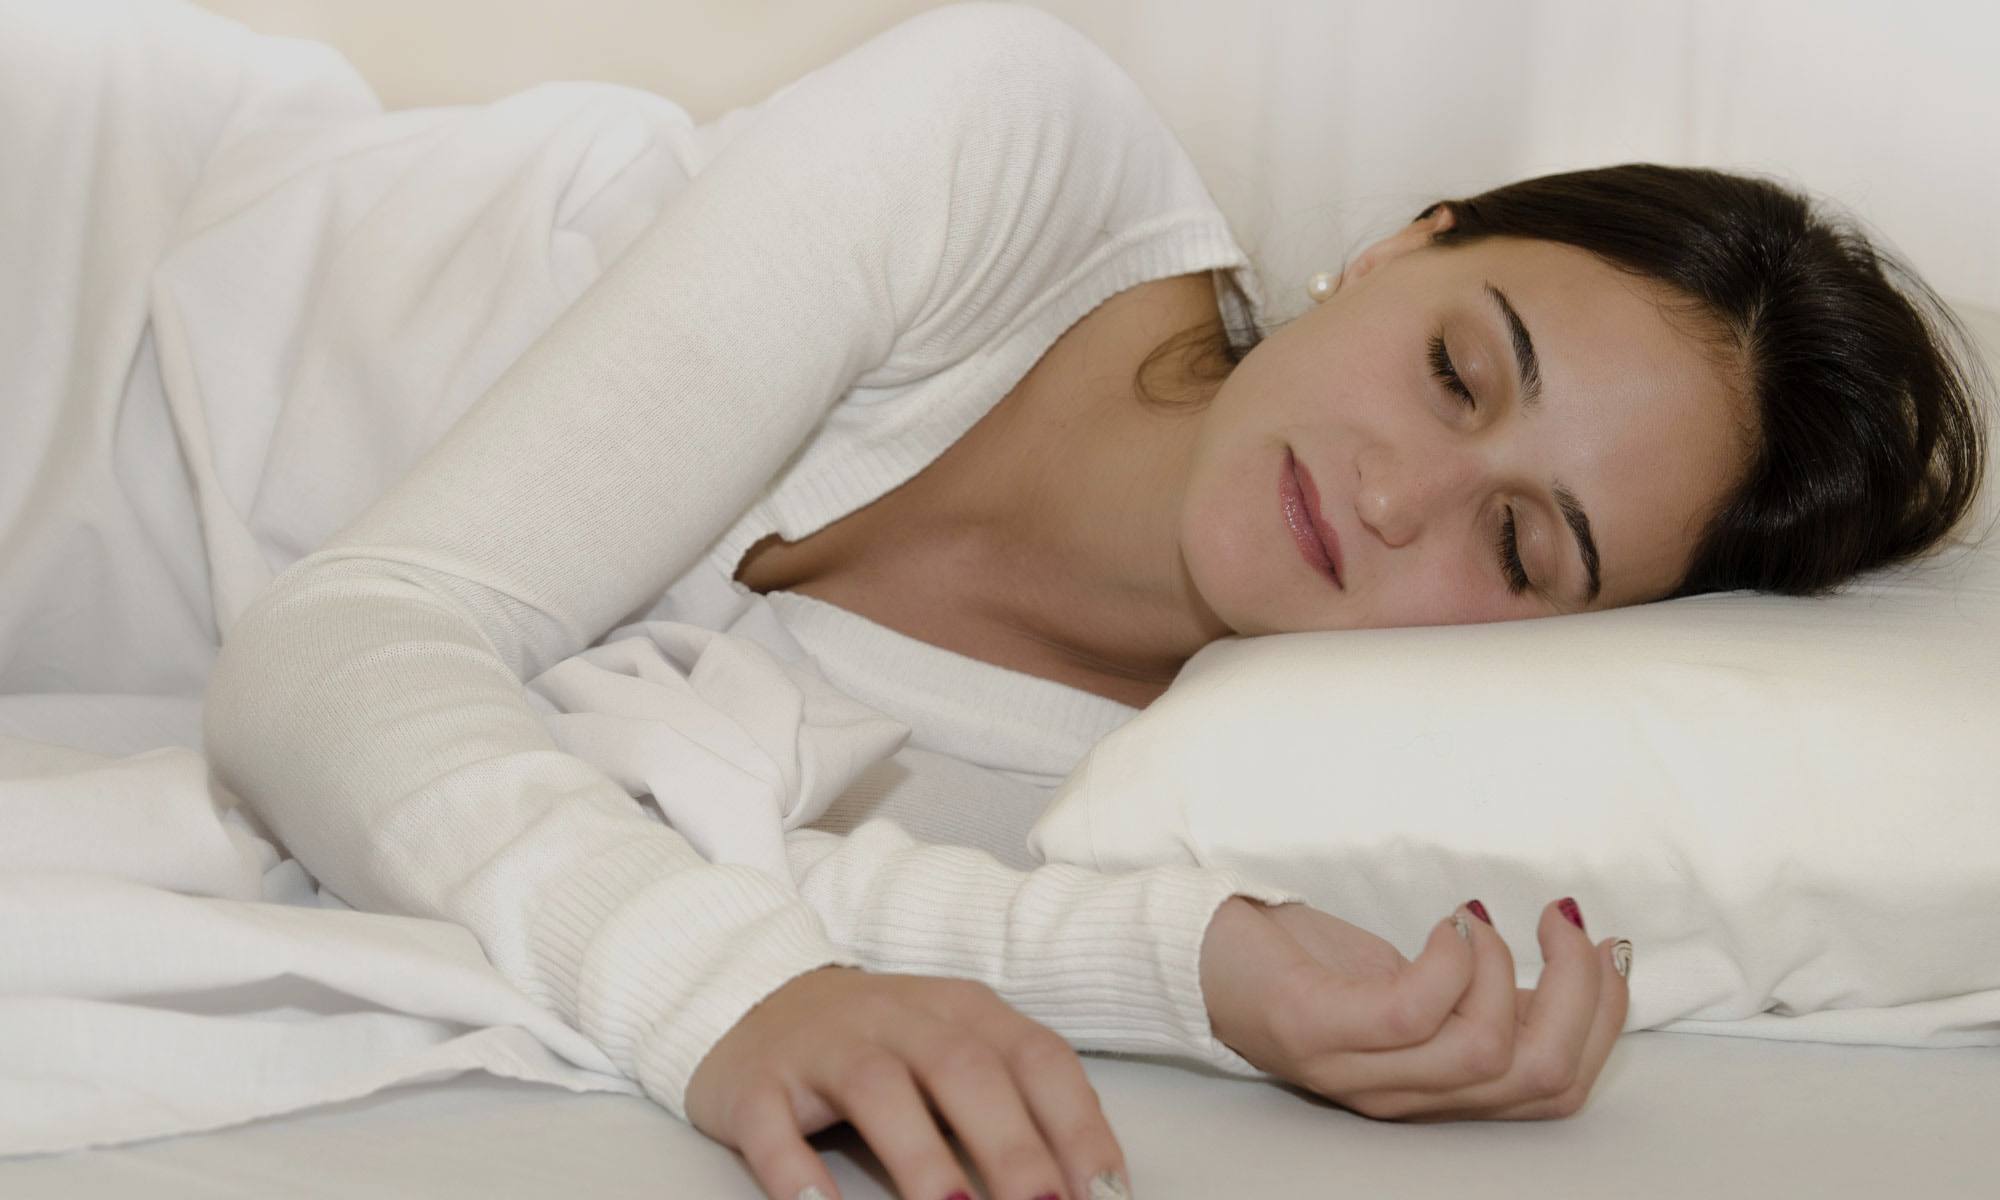 Woman sleeping after sleep apnea treatment